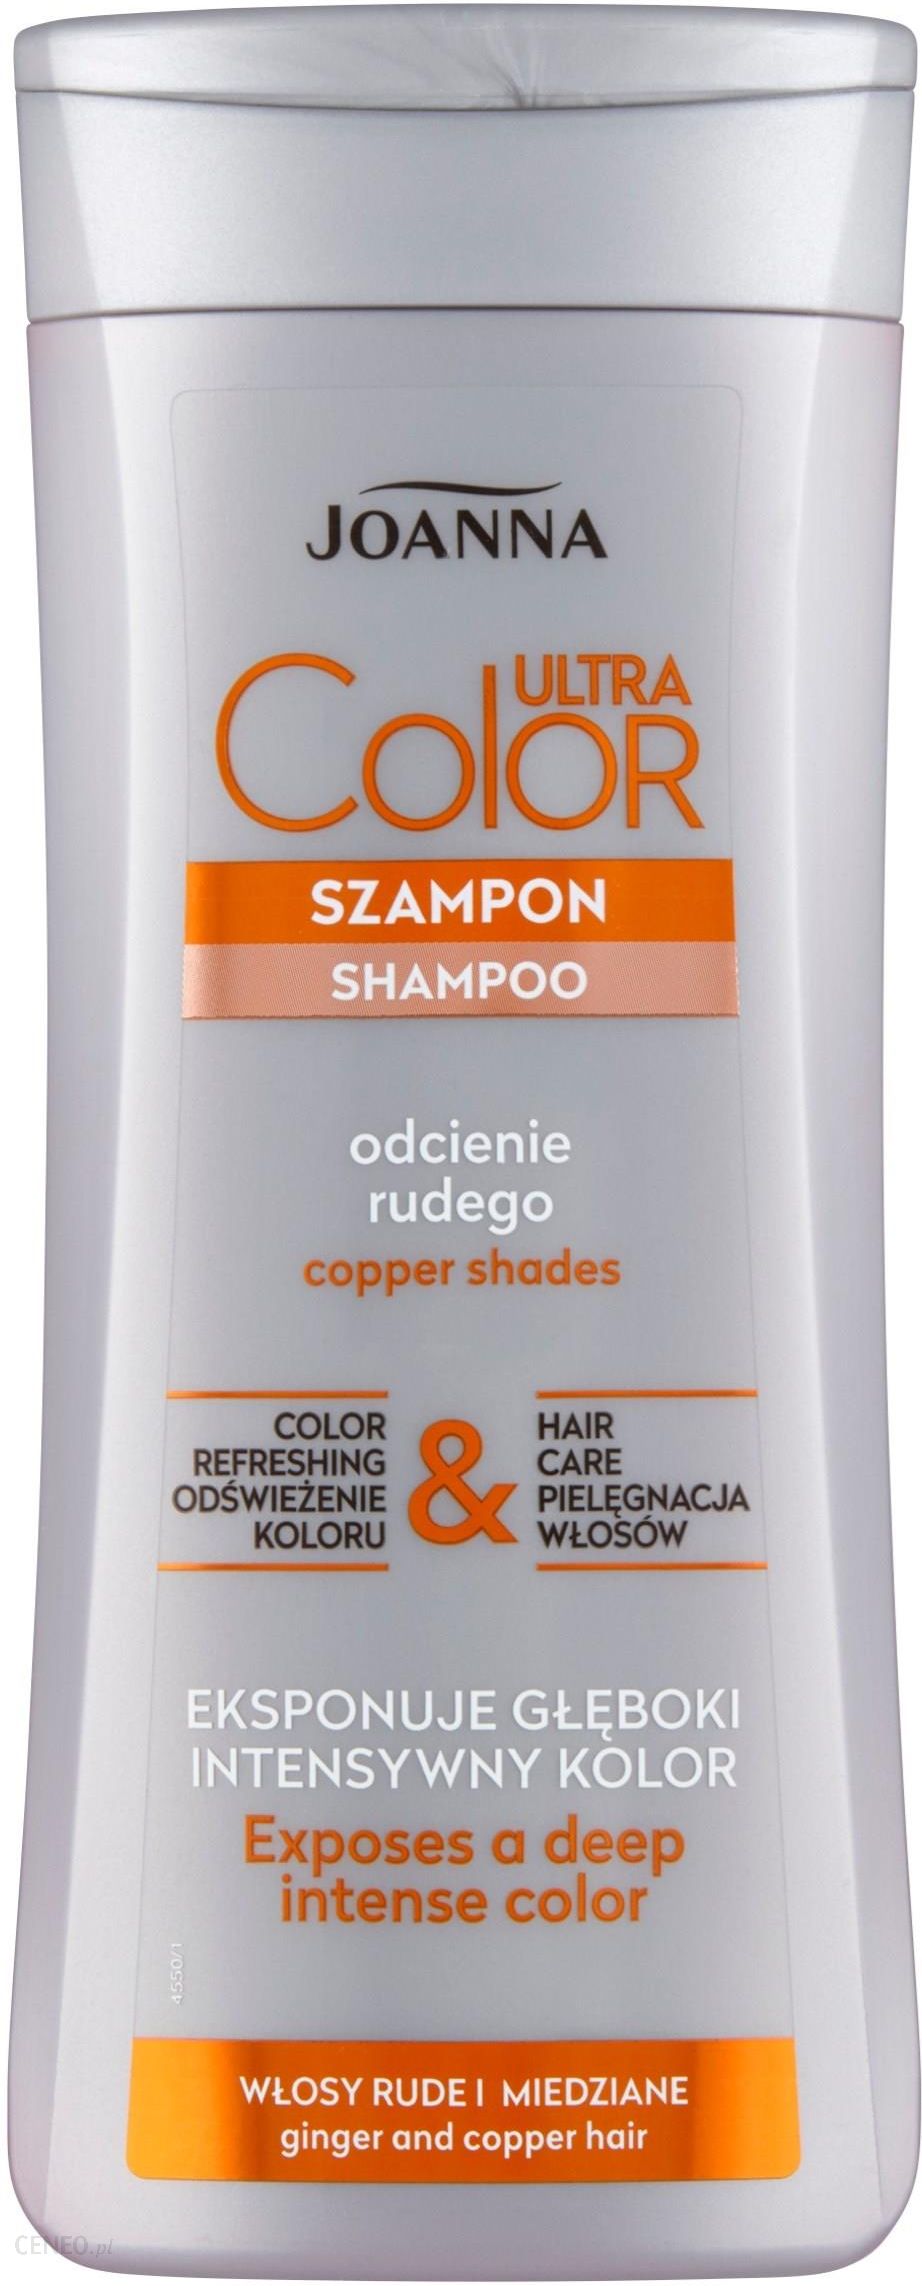 joanna szampon do włosów rudych